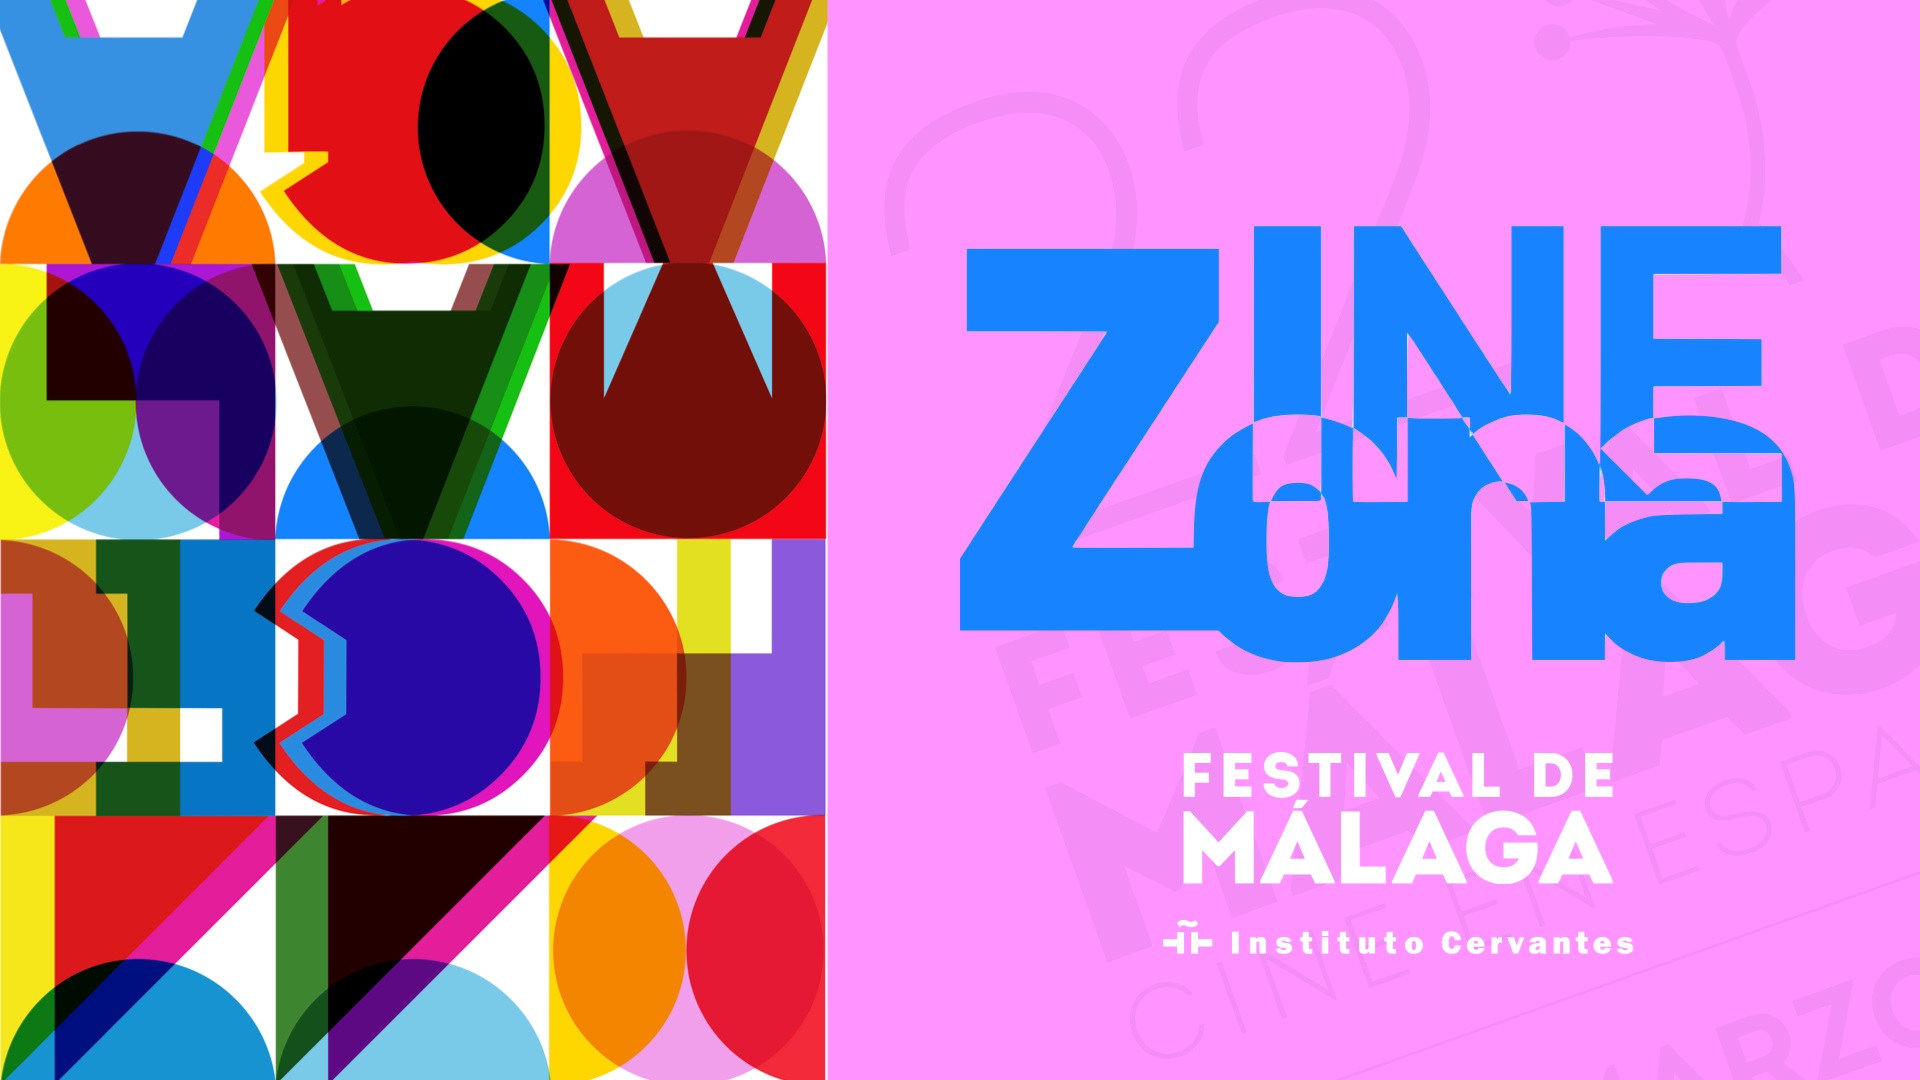 Zonazine. Documentaries in Spanish